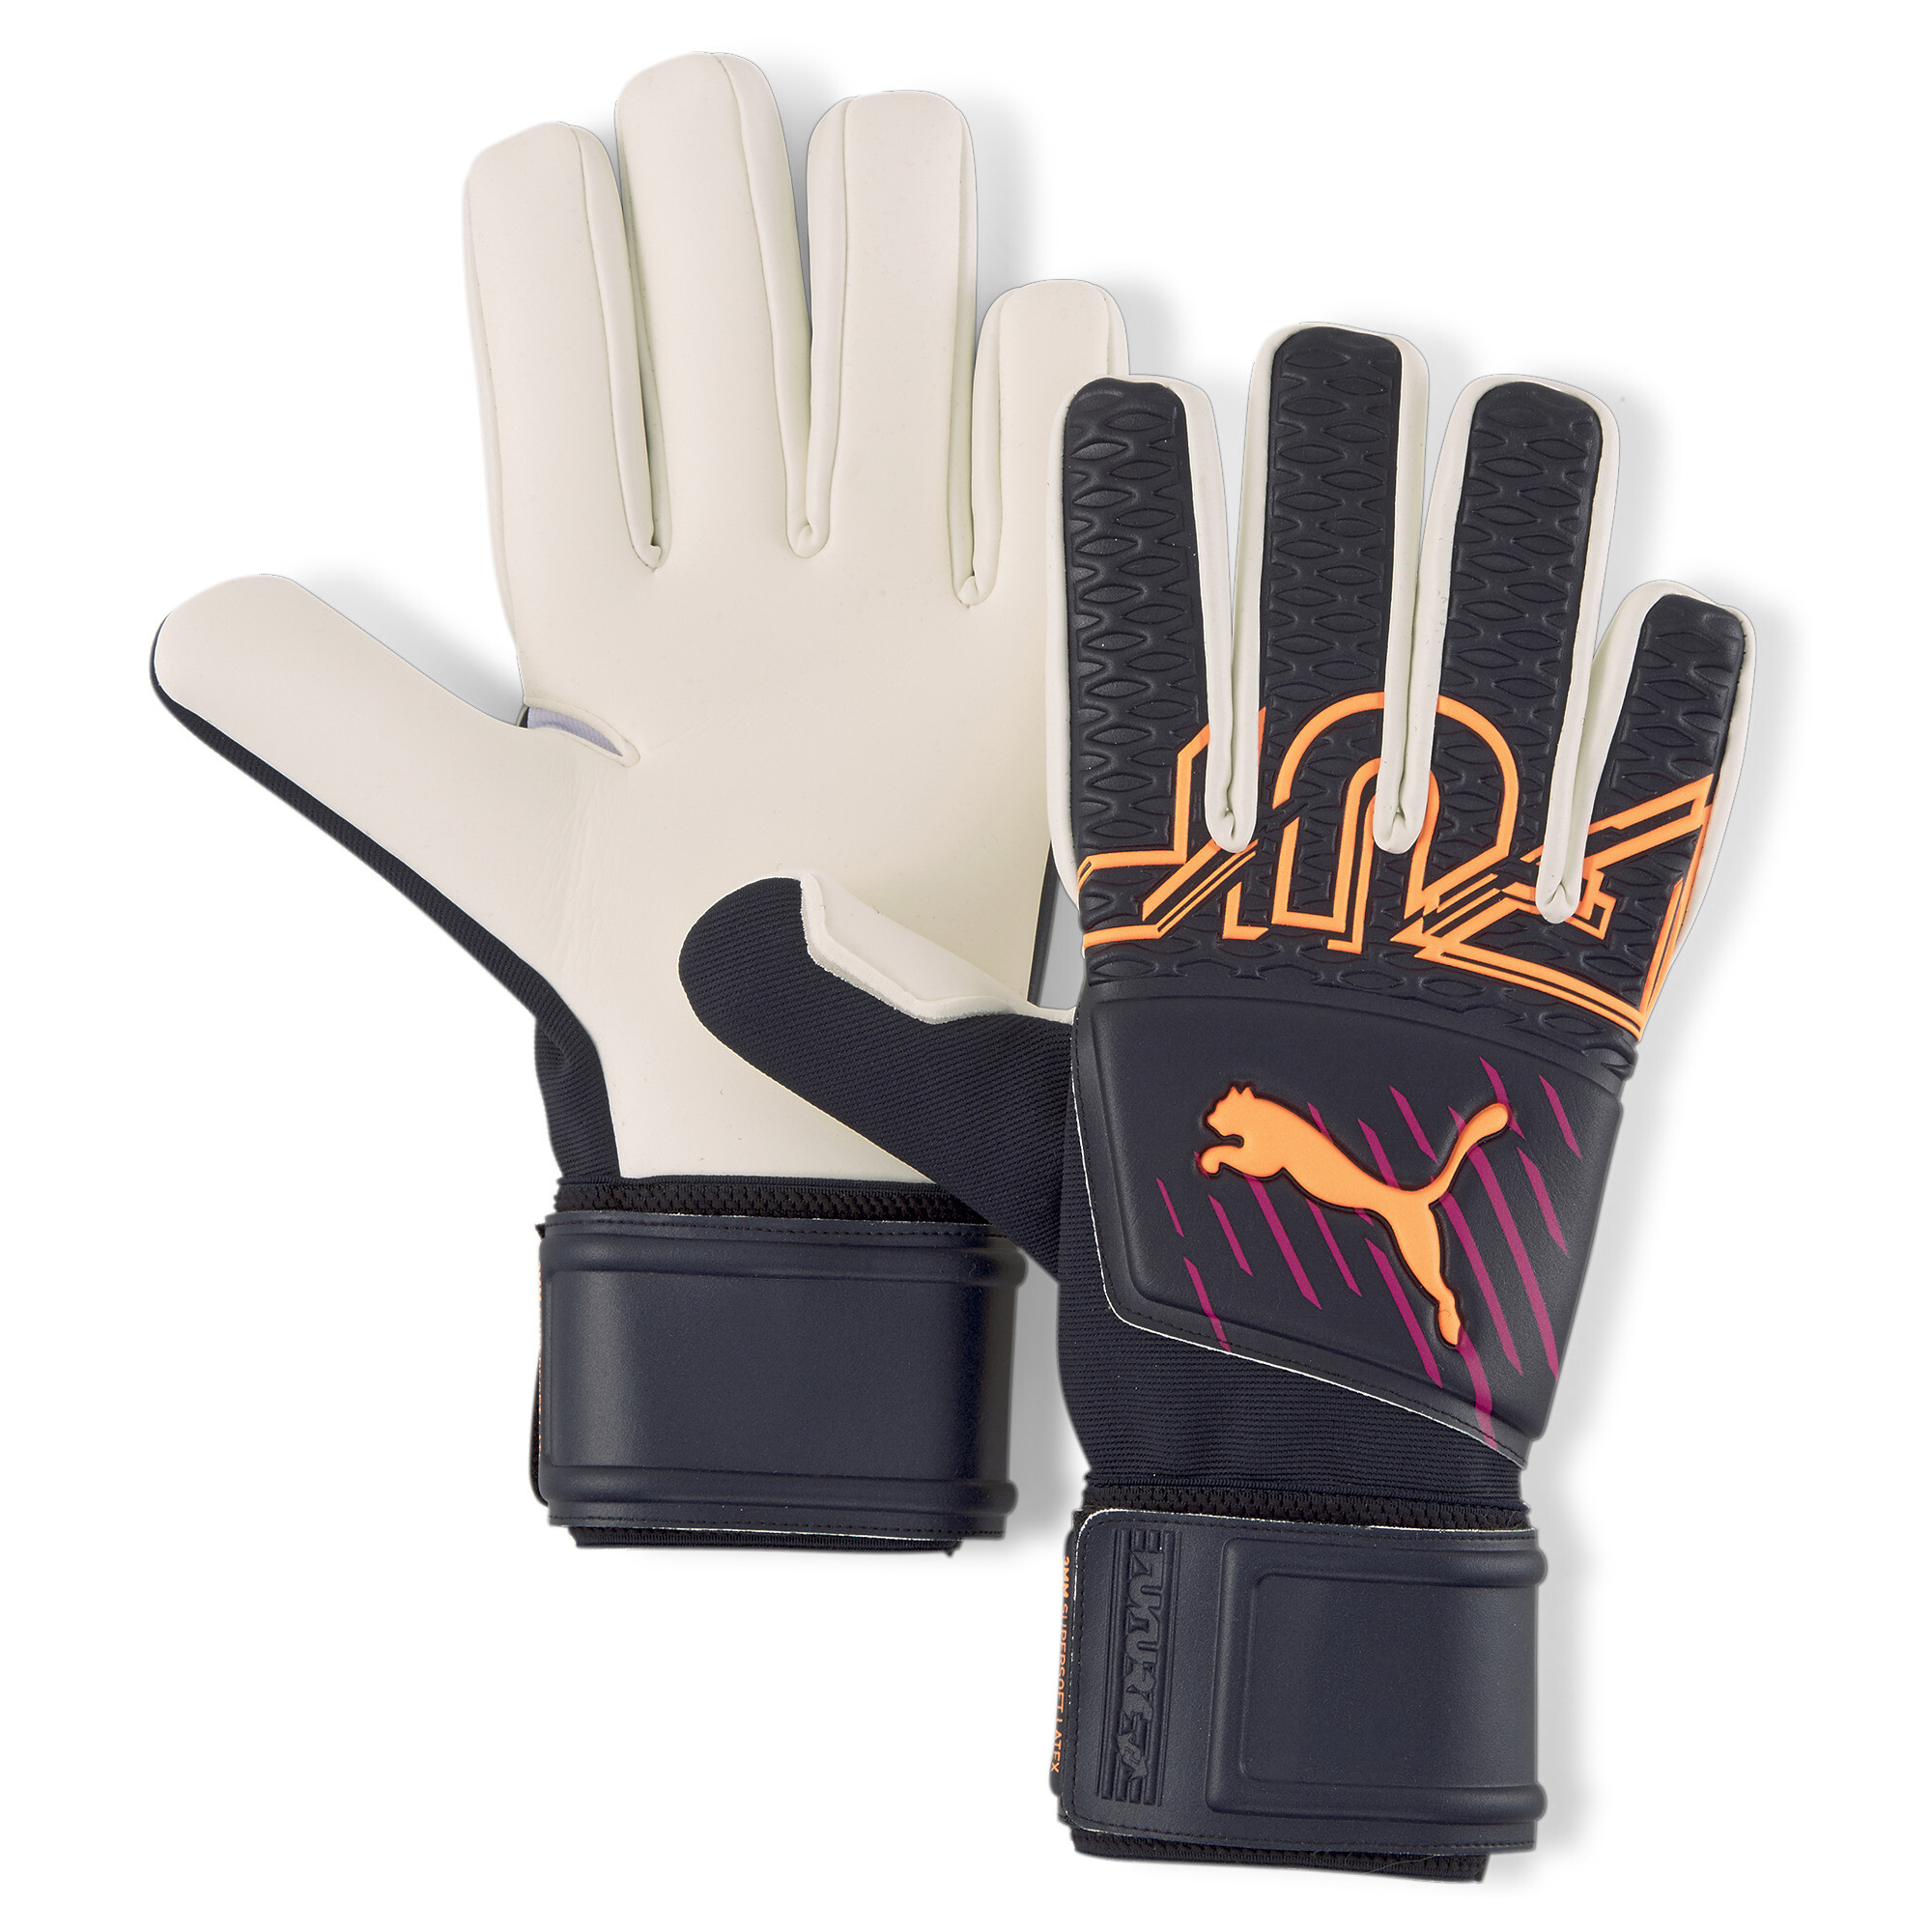 Puma FUTURE Grip 3 Negative Cut Goalkeeper Gloves, Blue, Size 6, Accessories